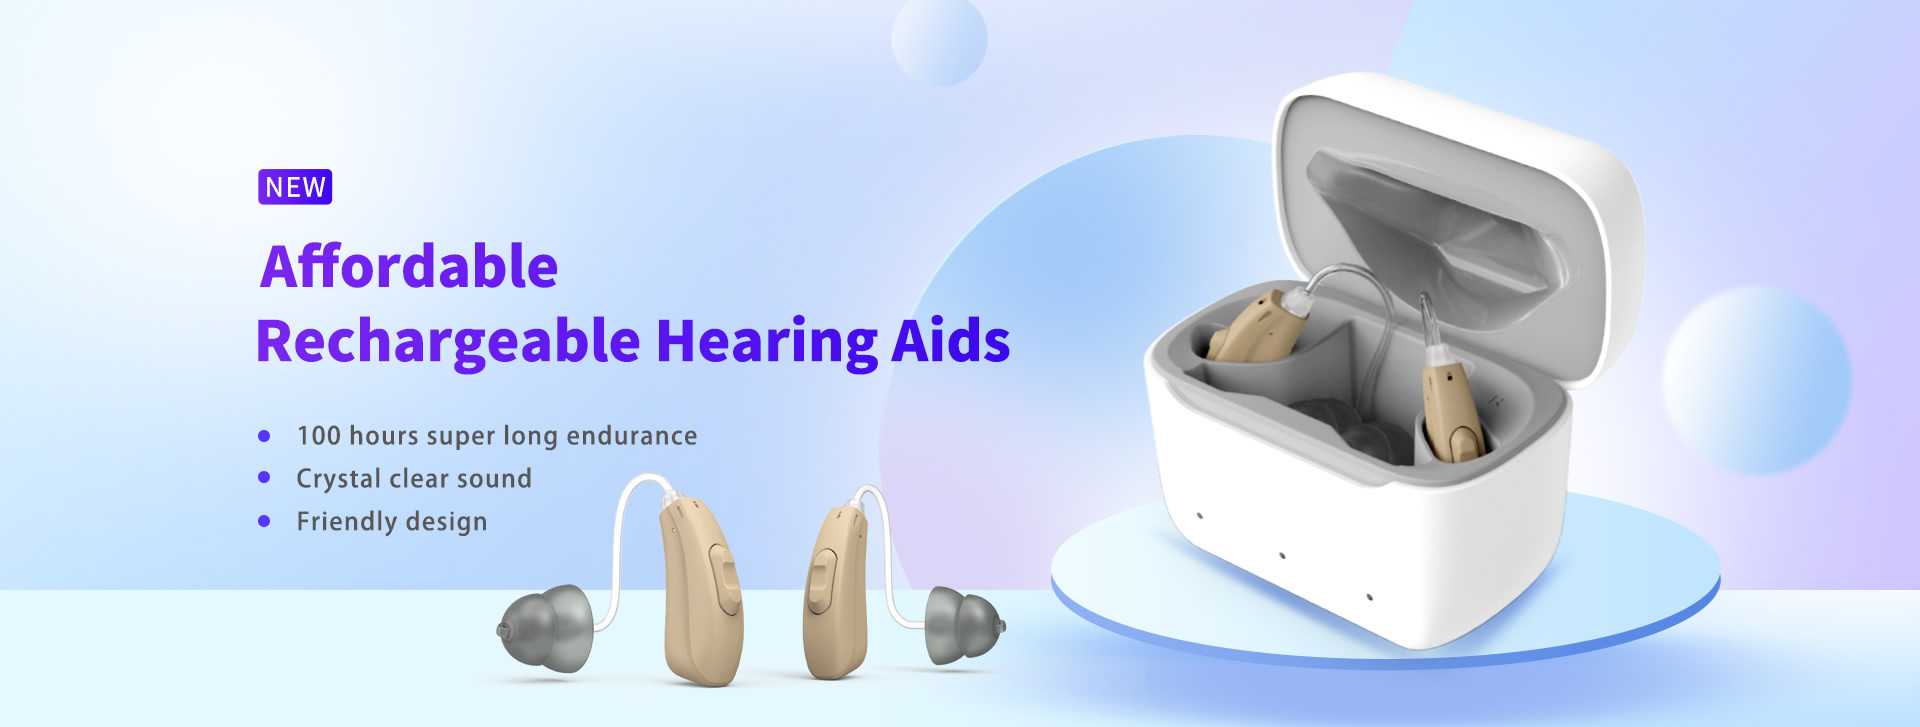 Aparelhos auditivos bte recarregáveis acessíveis